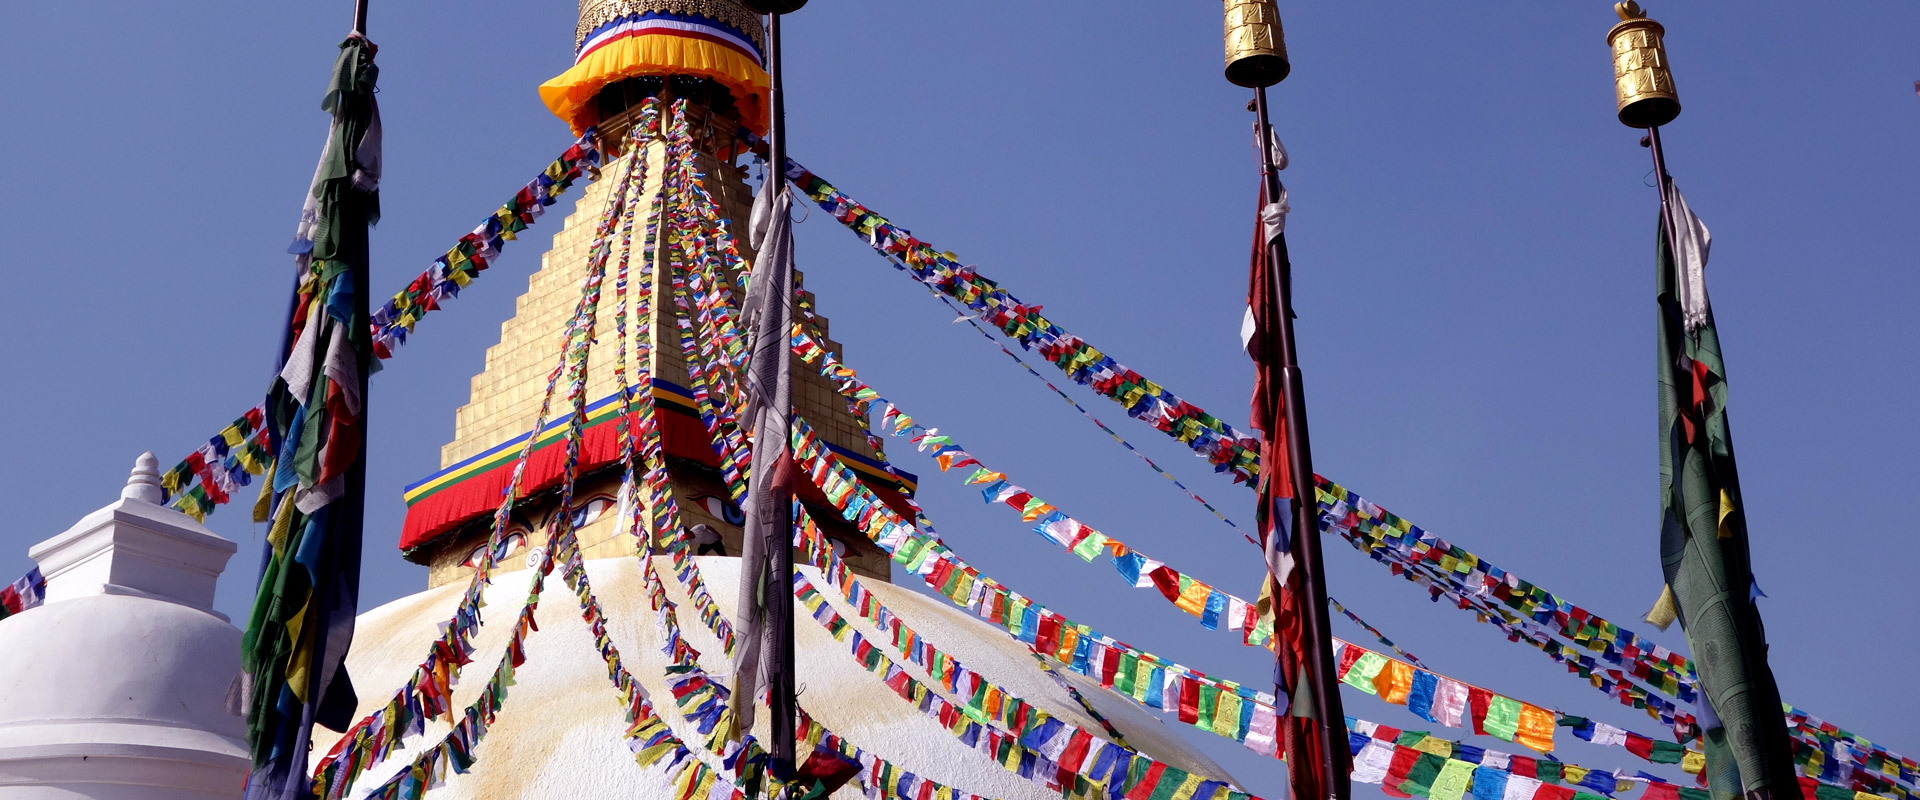 Bunte Gebetsfahnen, die von einem Stupa mit goldener Spitze in den blauen Himmel strahlen, umgeben von klarer Luft und Sonnenschein.